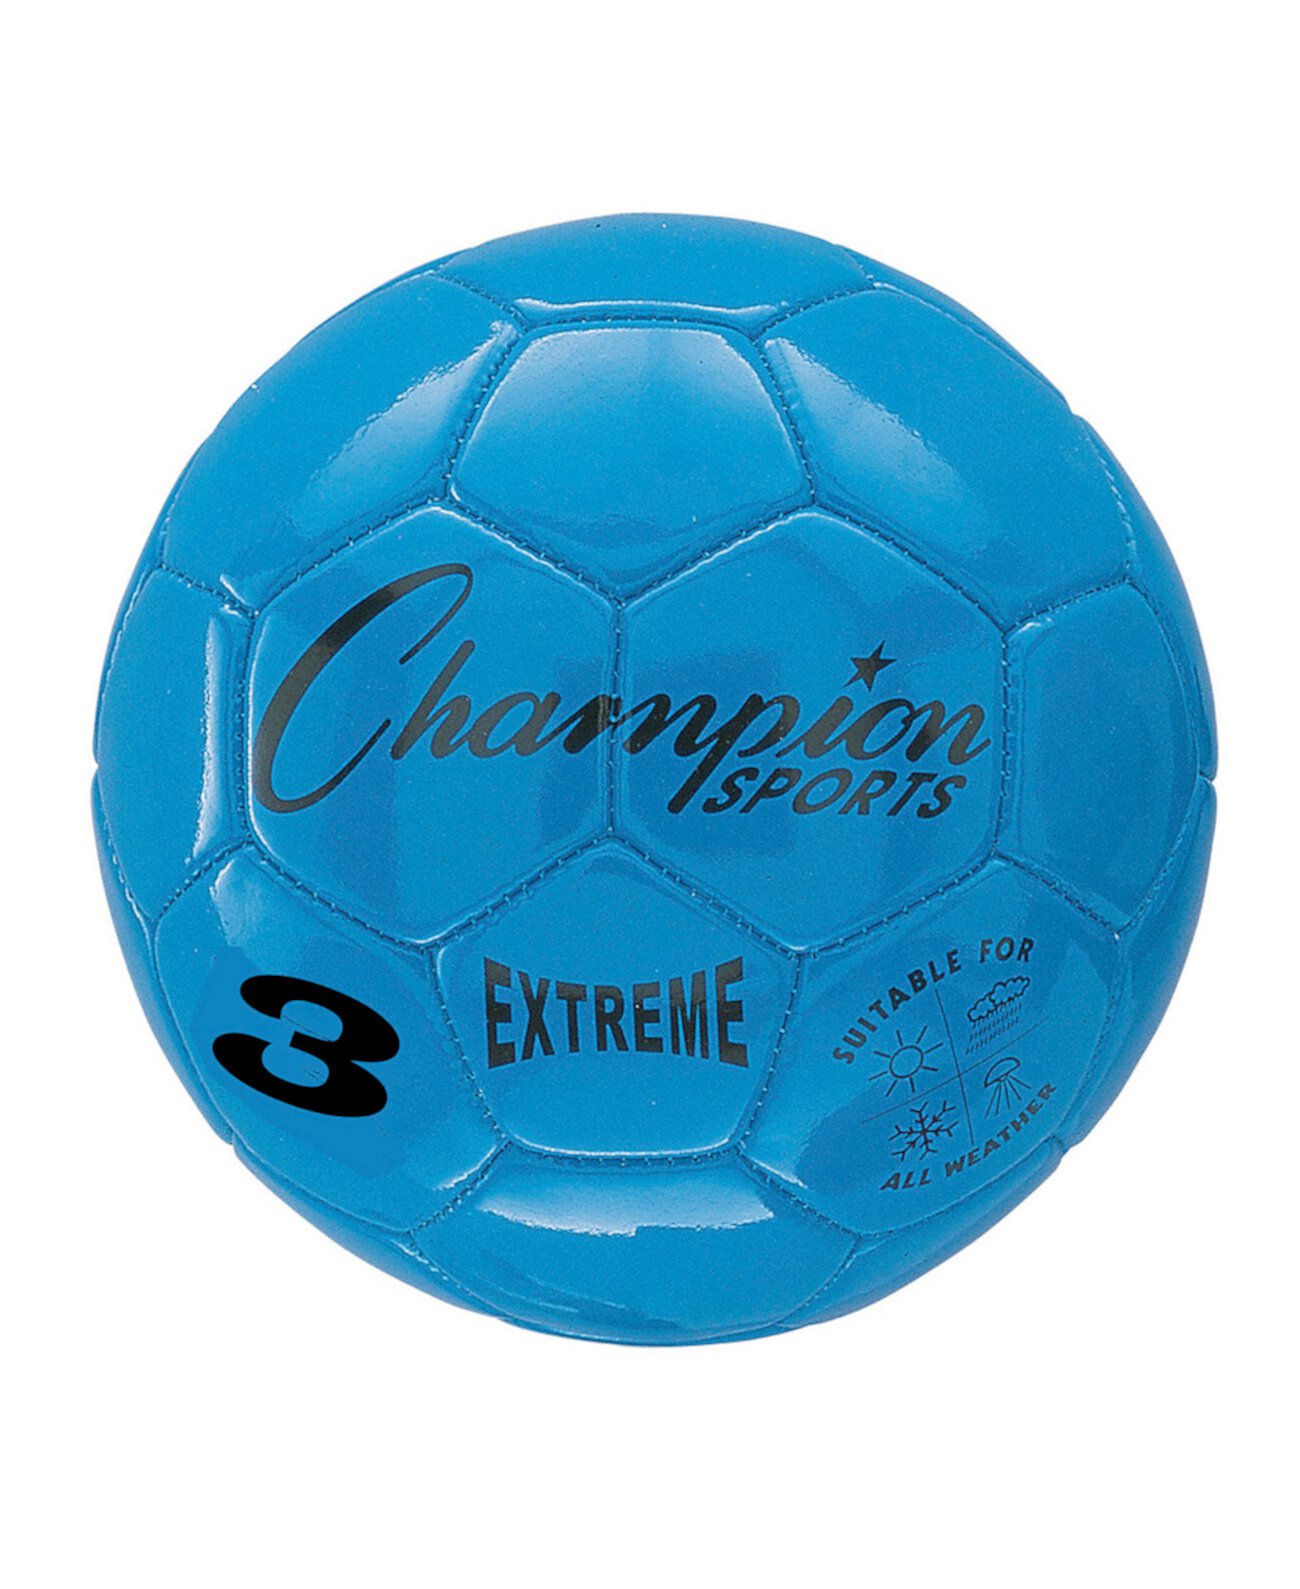 Экстремальный футбольный мяч Champion Sports